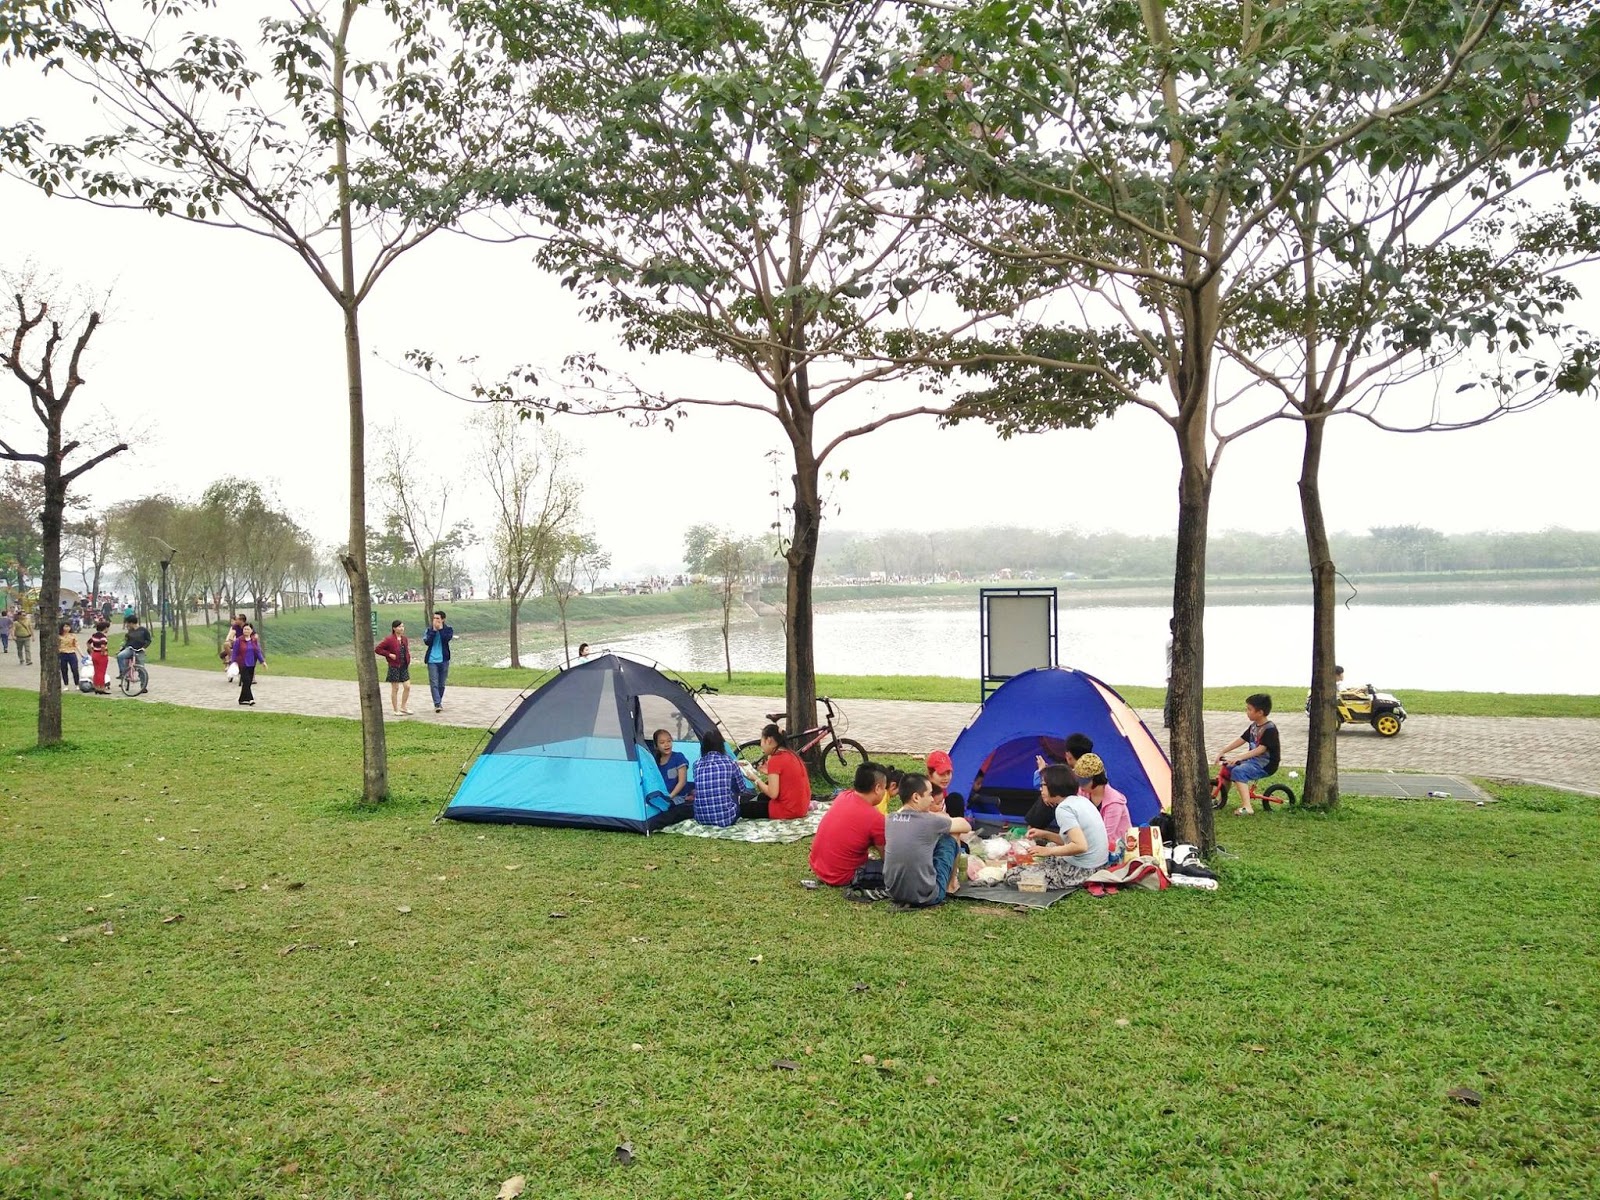 Công viên đầy cây xanh - điểm dã ngoại tuyệt vời cho trẻ nhỏ vào cuối tuần tại Hà Nội - Ảnh 2.